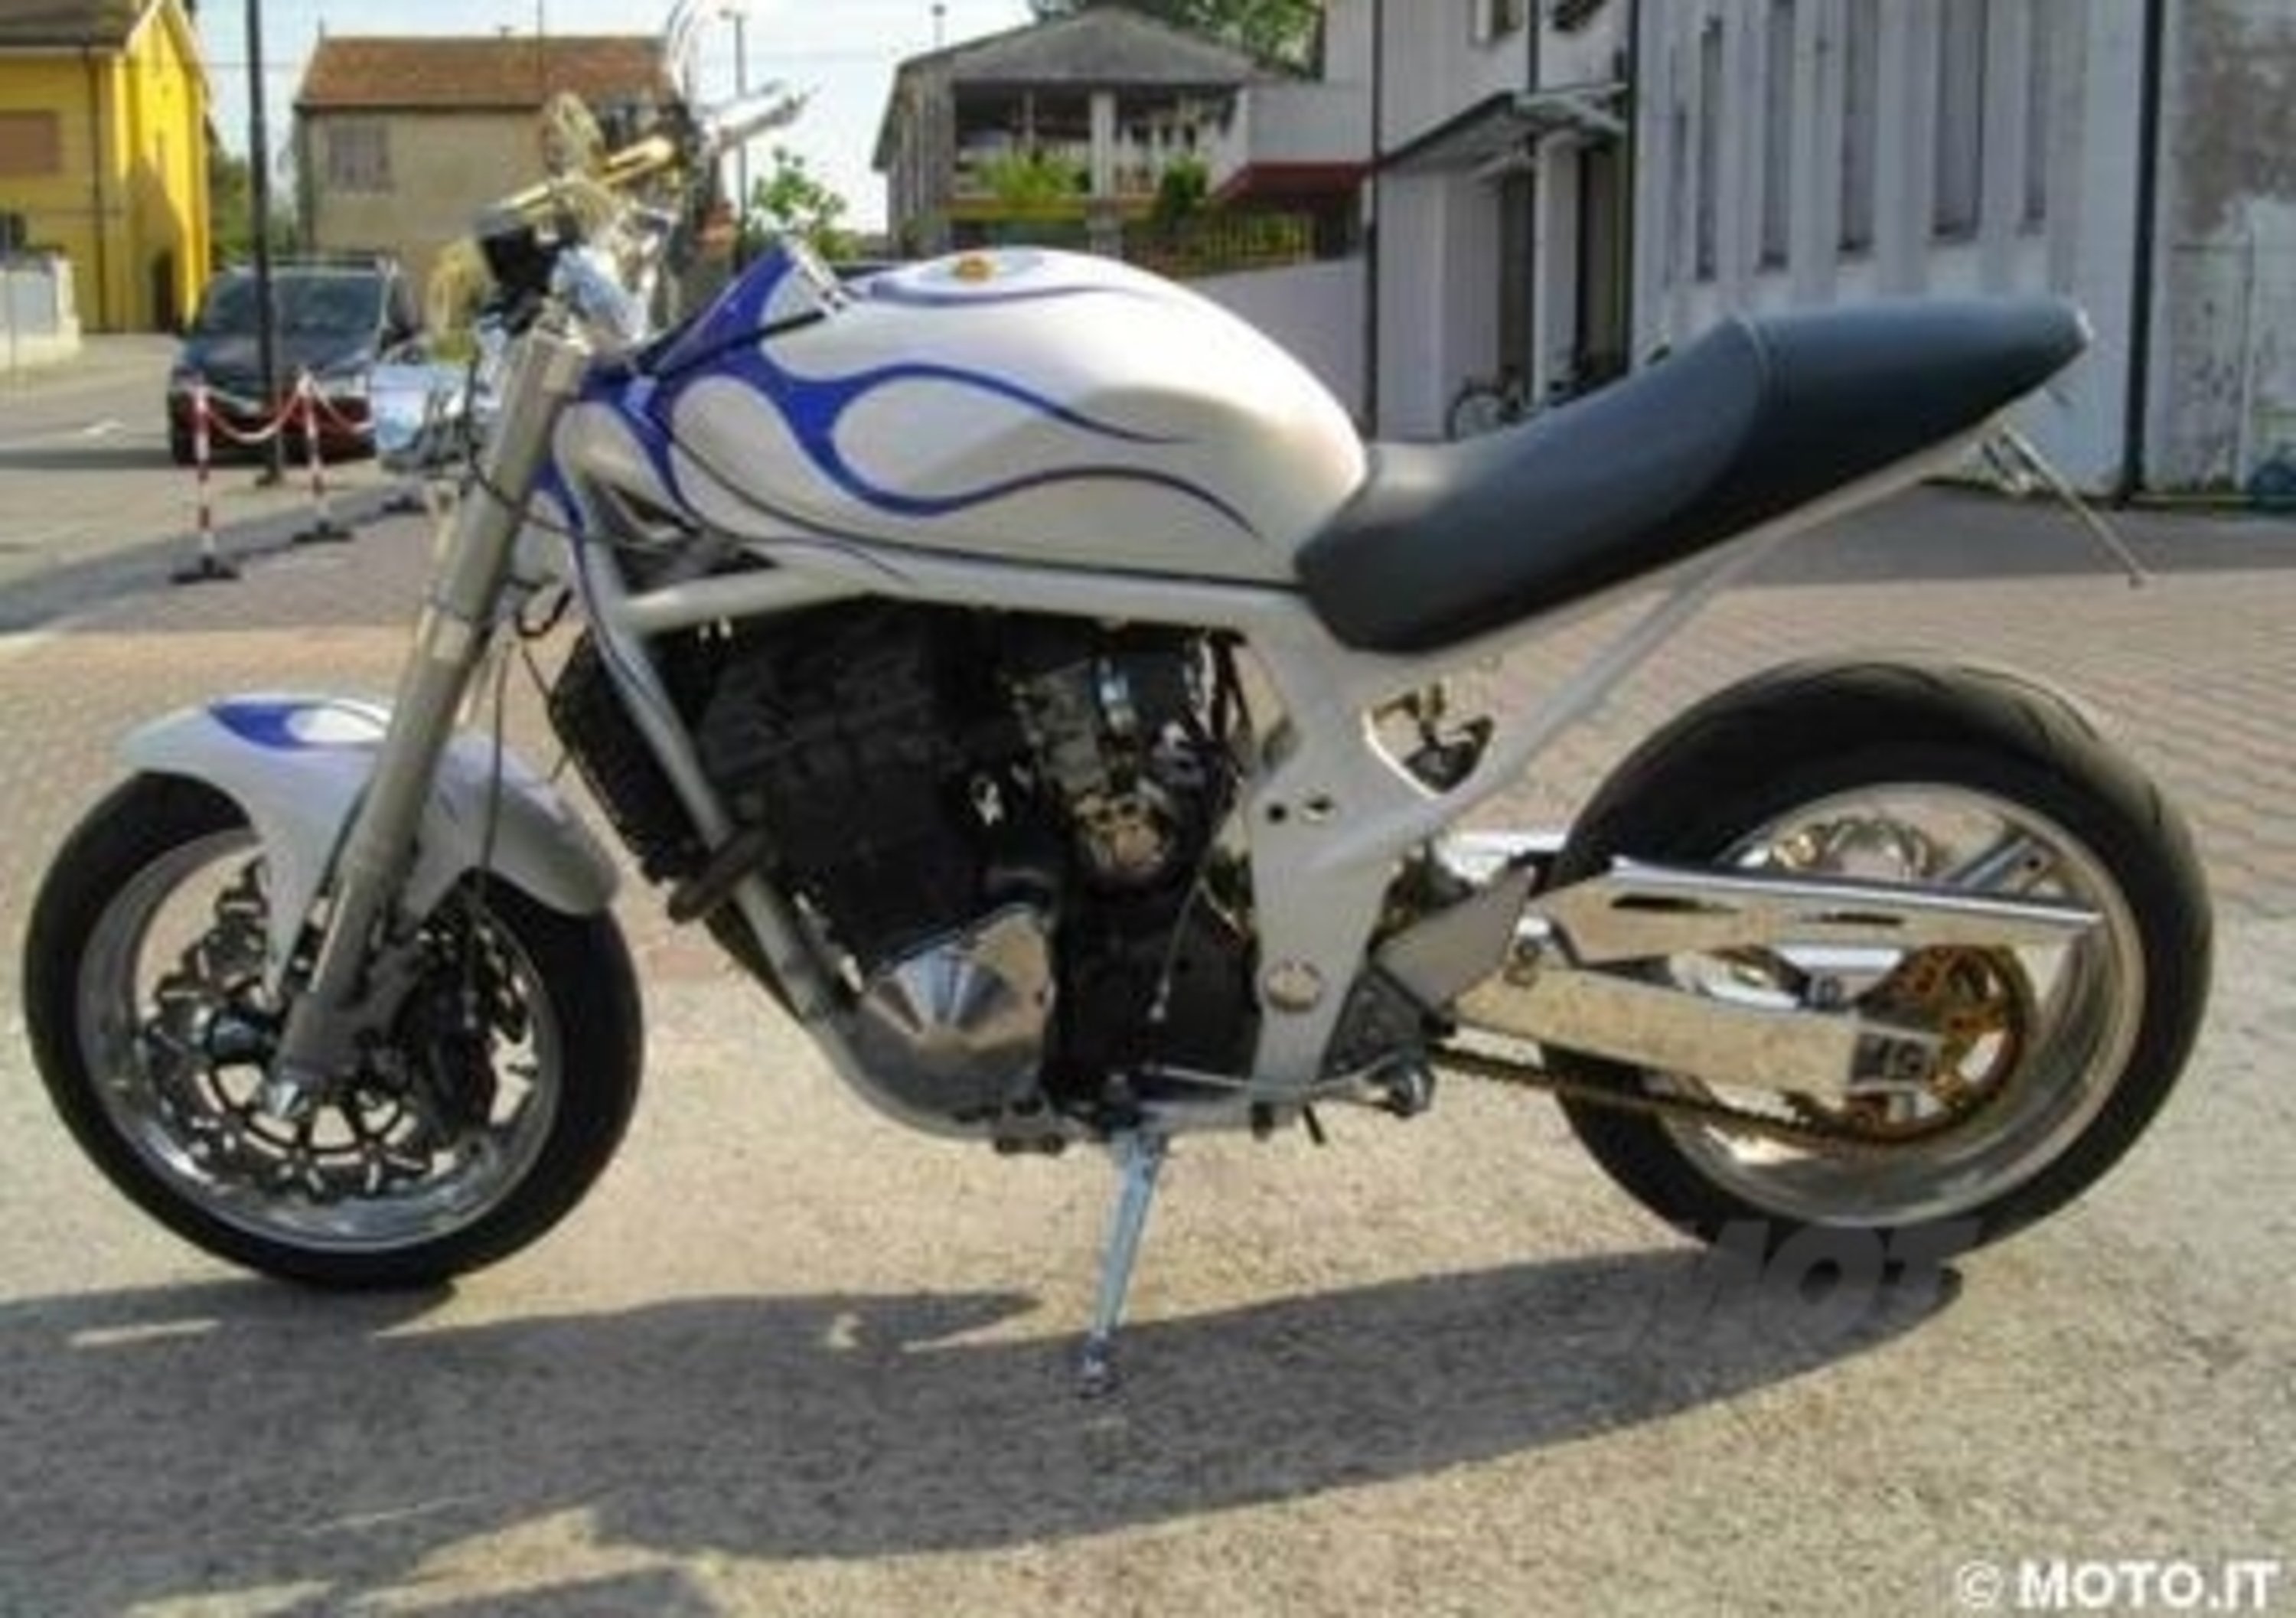 Le Strane di Moto.it: Suzuki Bandit 1200